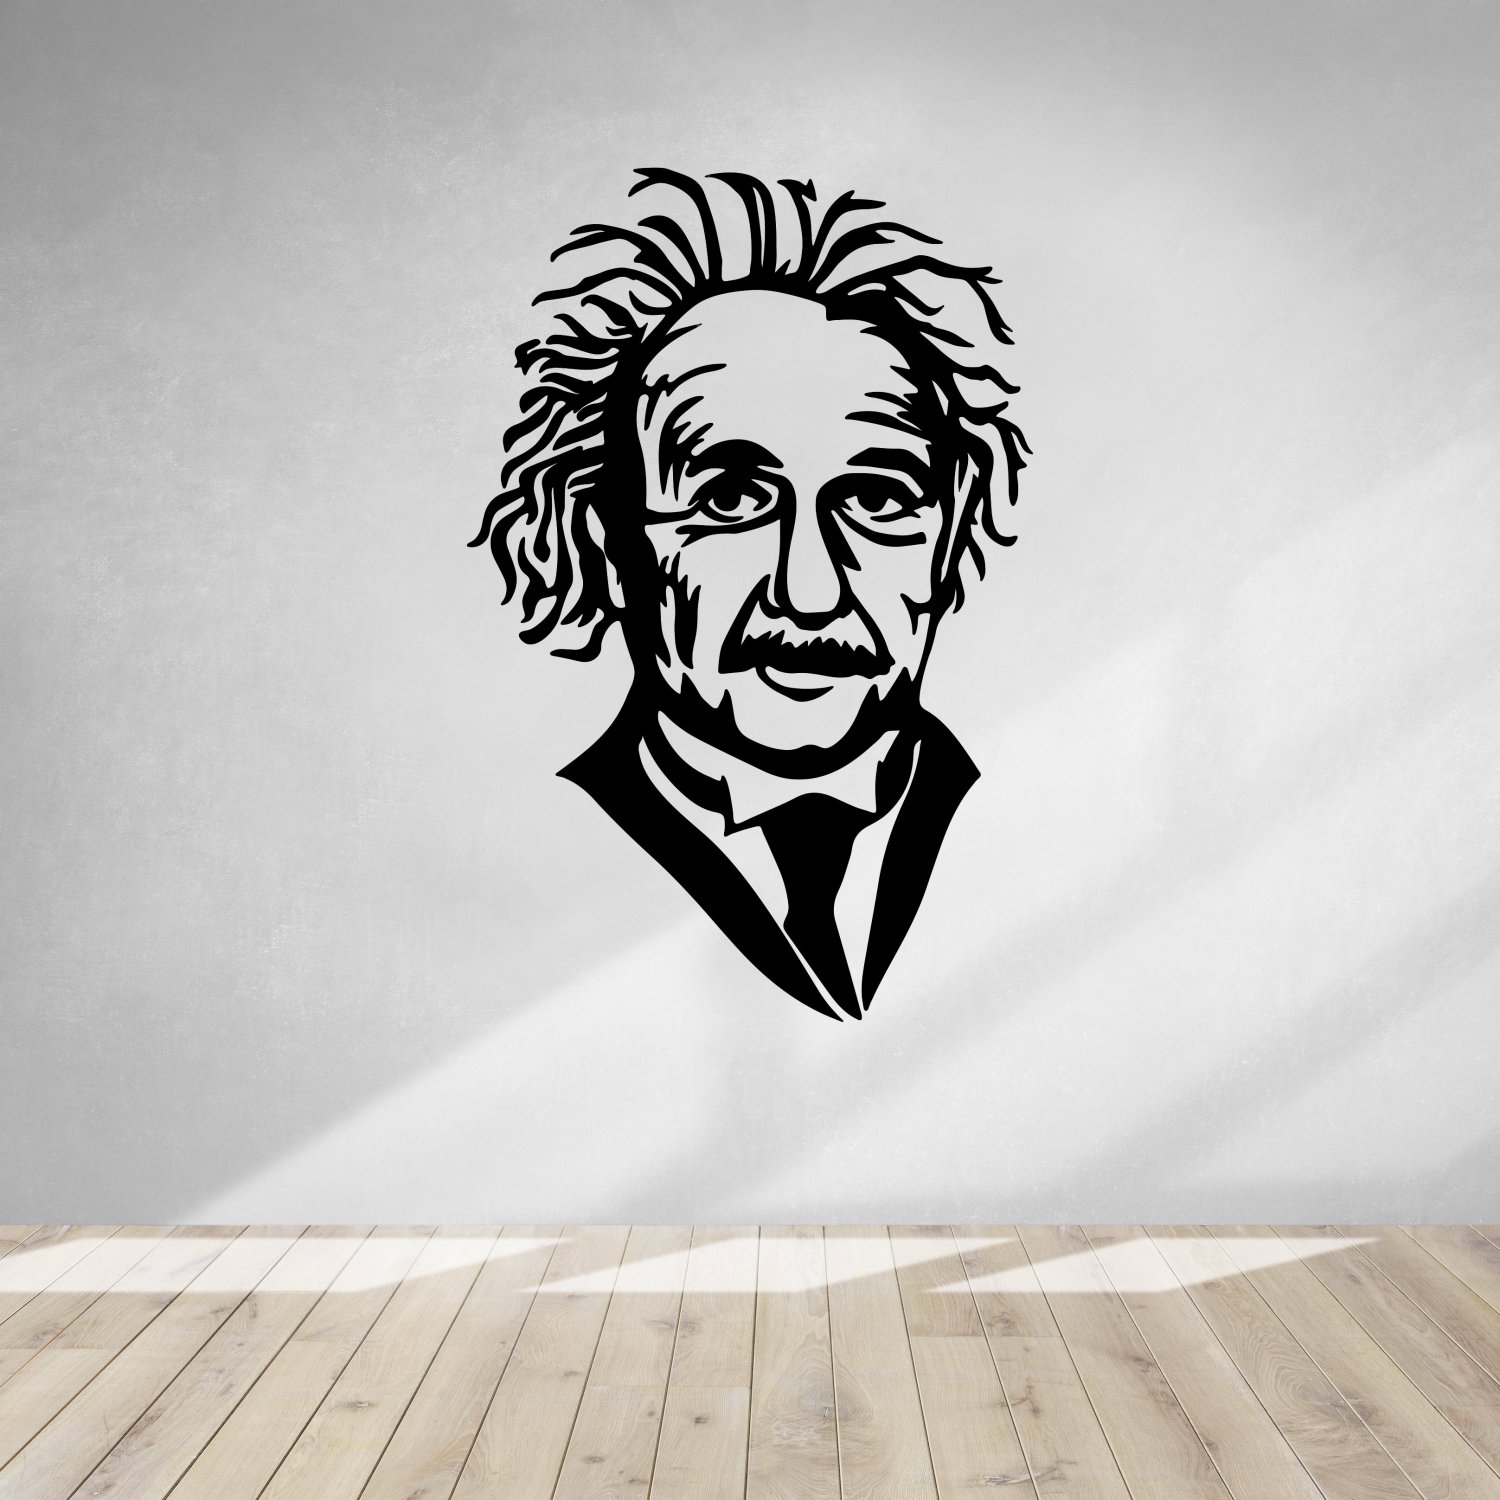 Tượng tường albert einstein in 3D: Sự hiểu biết và tài năng của nhà vật lý Albert Einstein được tái hiện sống động qua tác phẩm tượng tường albert einstein in 3D. Vị nhà khoa học lỗi lạc này đã mang lại nhiều đóng góp vượt thời gian cho nhân loại, và giờ đây, bạn có thể tận hưởng sự tôn trọng và trân quý đối với ông thông qua tác phẩm nghệ thuật 3D đầy tinh tế và hoàn hảo này.